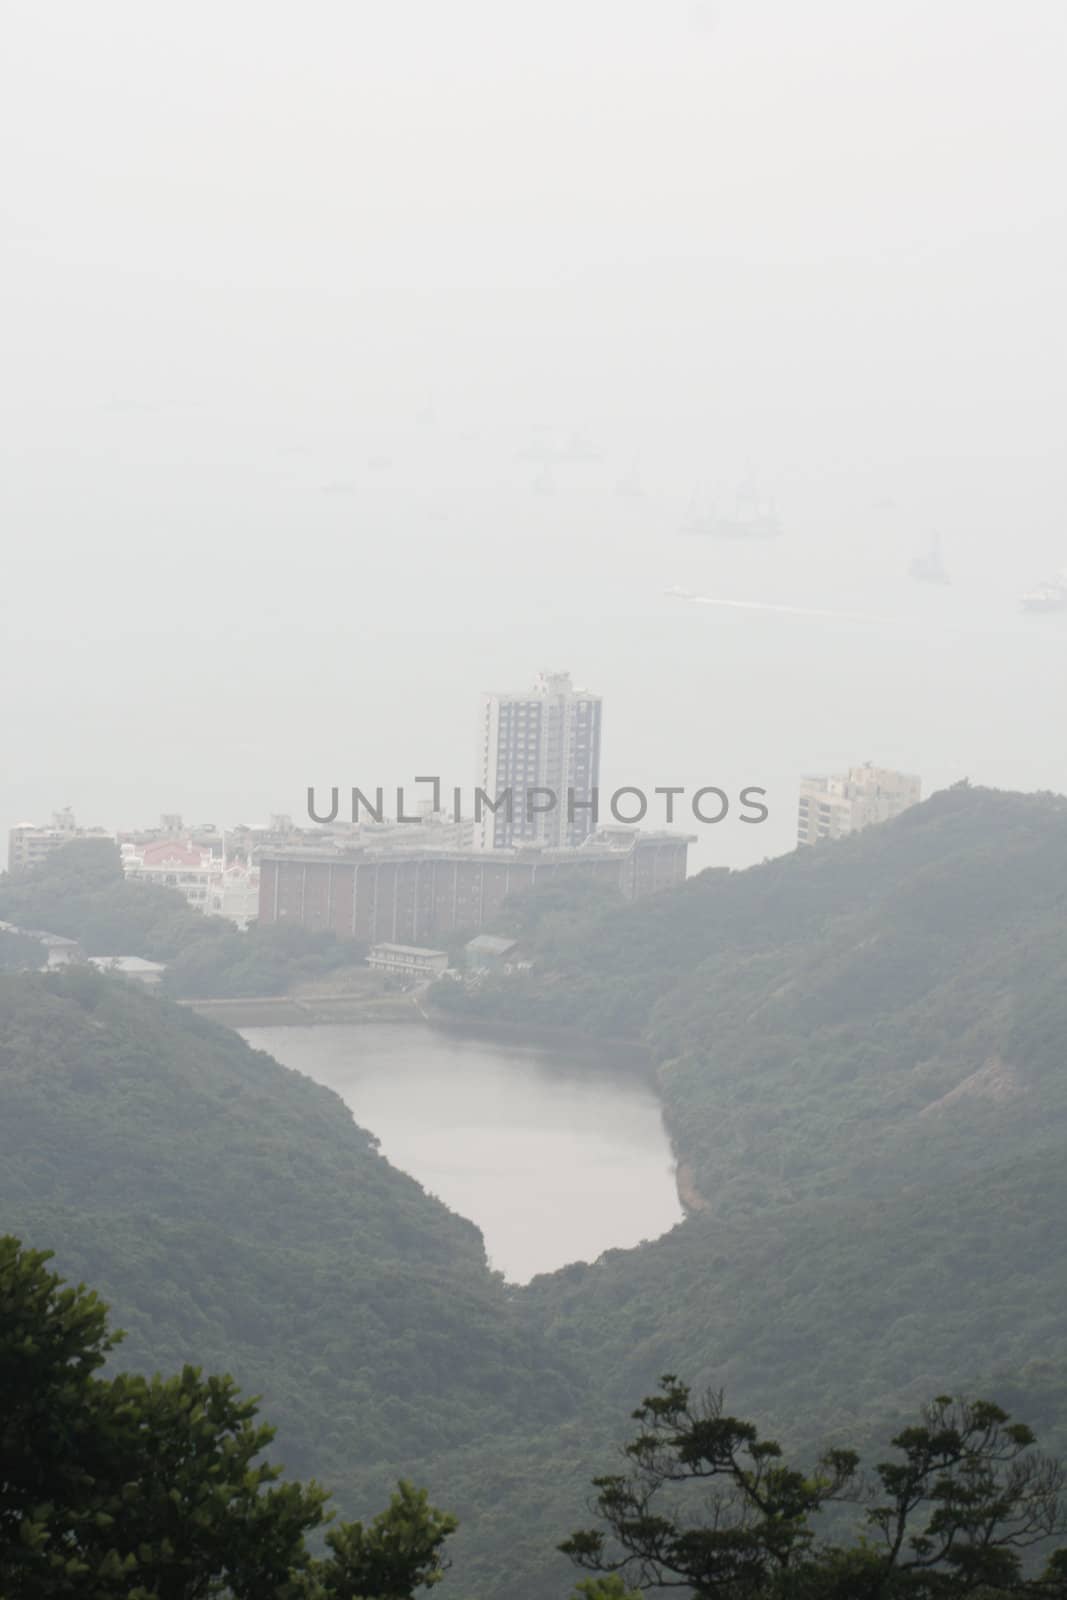 Drinking water reservoir in Hong Kong, Pok Fu Lam  by koep